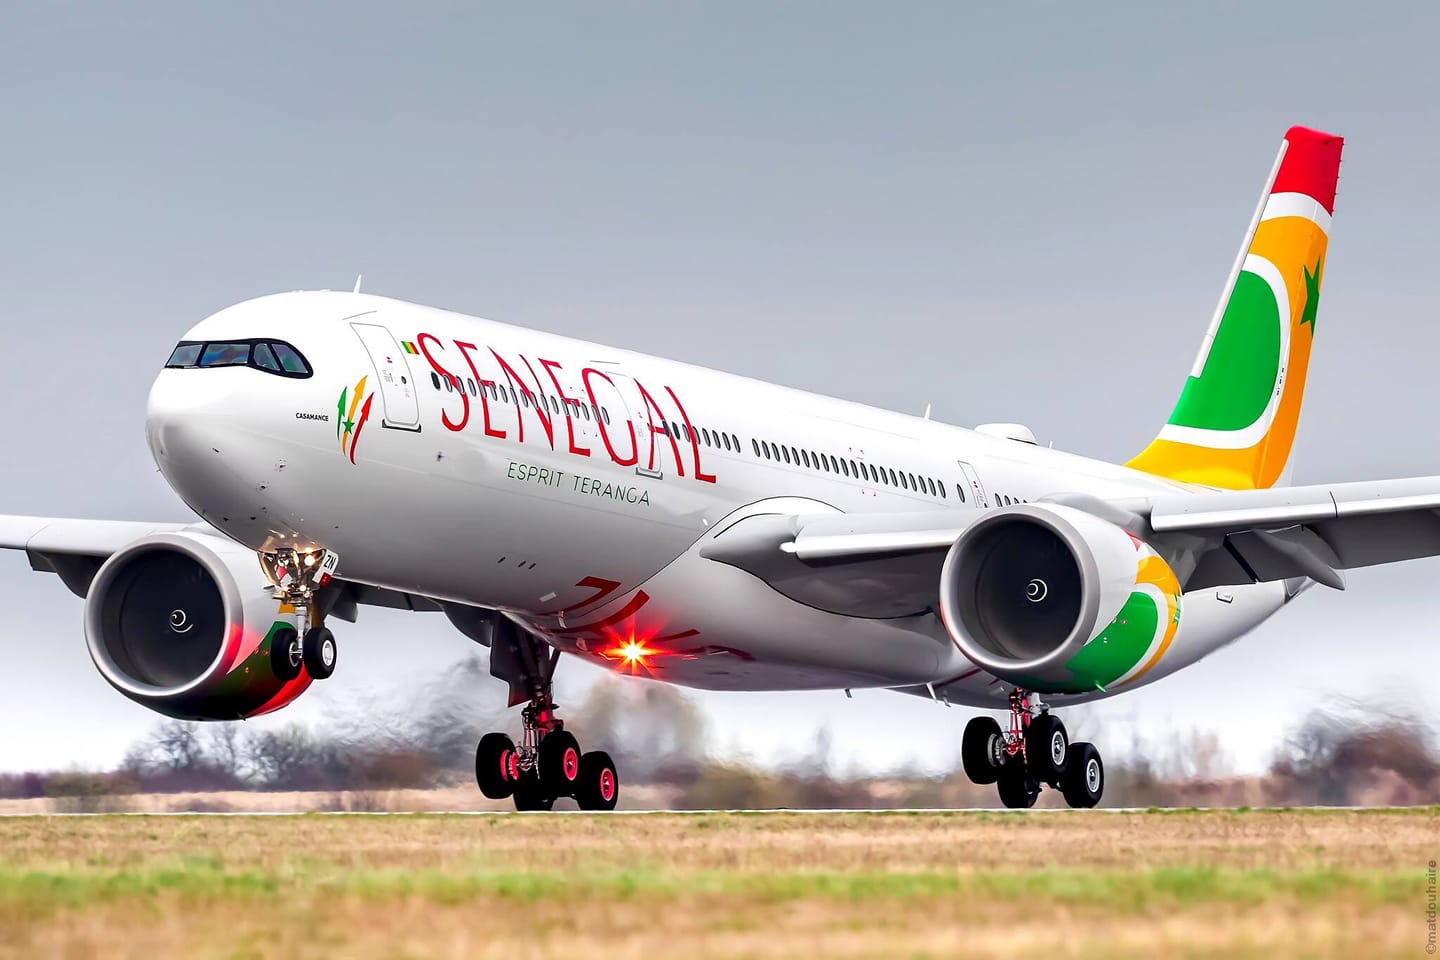 Indemnisations, droit d’assistance, maladresse de communication… : La galère des passagers d’Air Sénégal étalée sur Twitter.